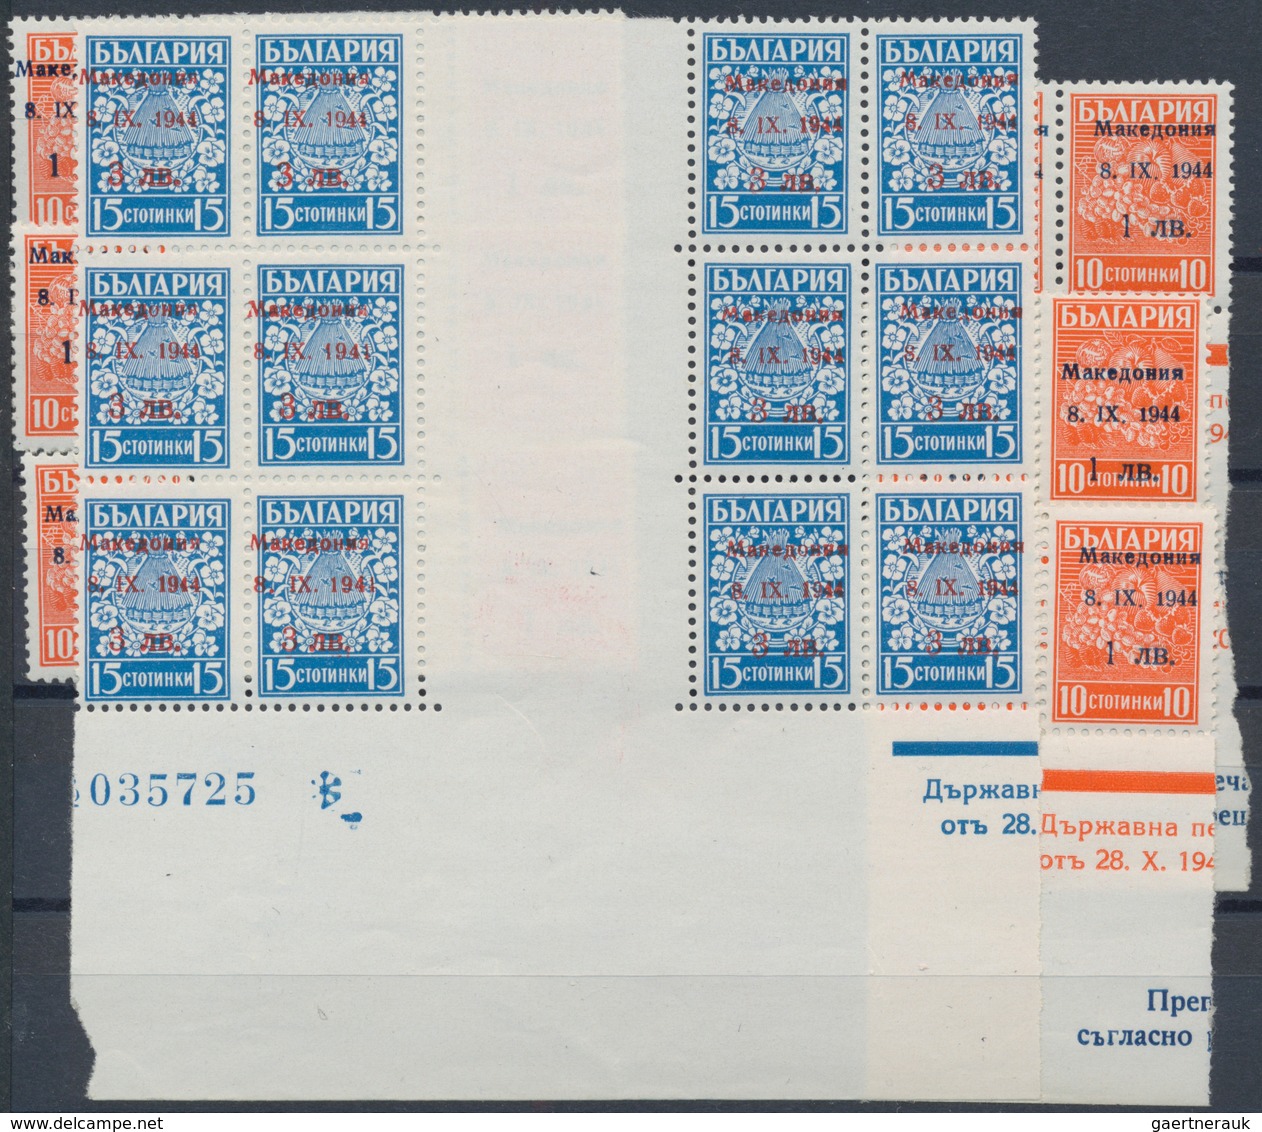 Dt. Besetzung II WK - Mazedonien: 1944, 1 L. auf 10 St. rotorange und 3 L. auf 15 St. blau, engros-B